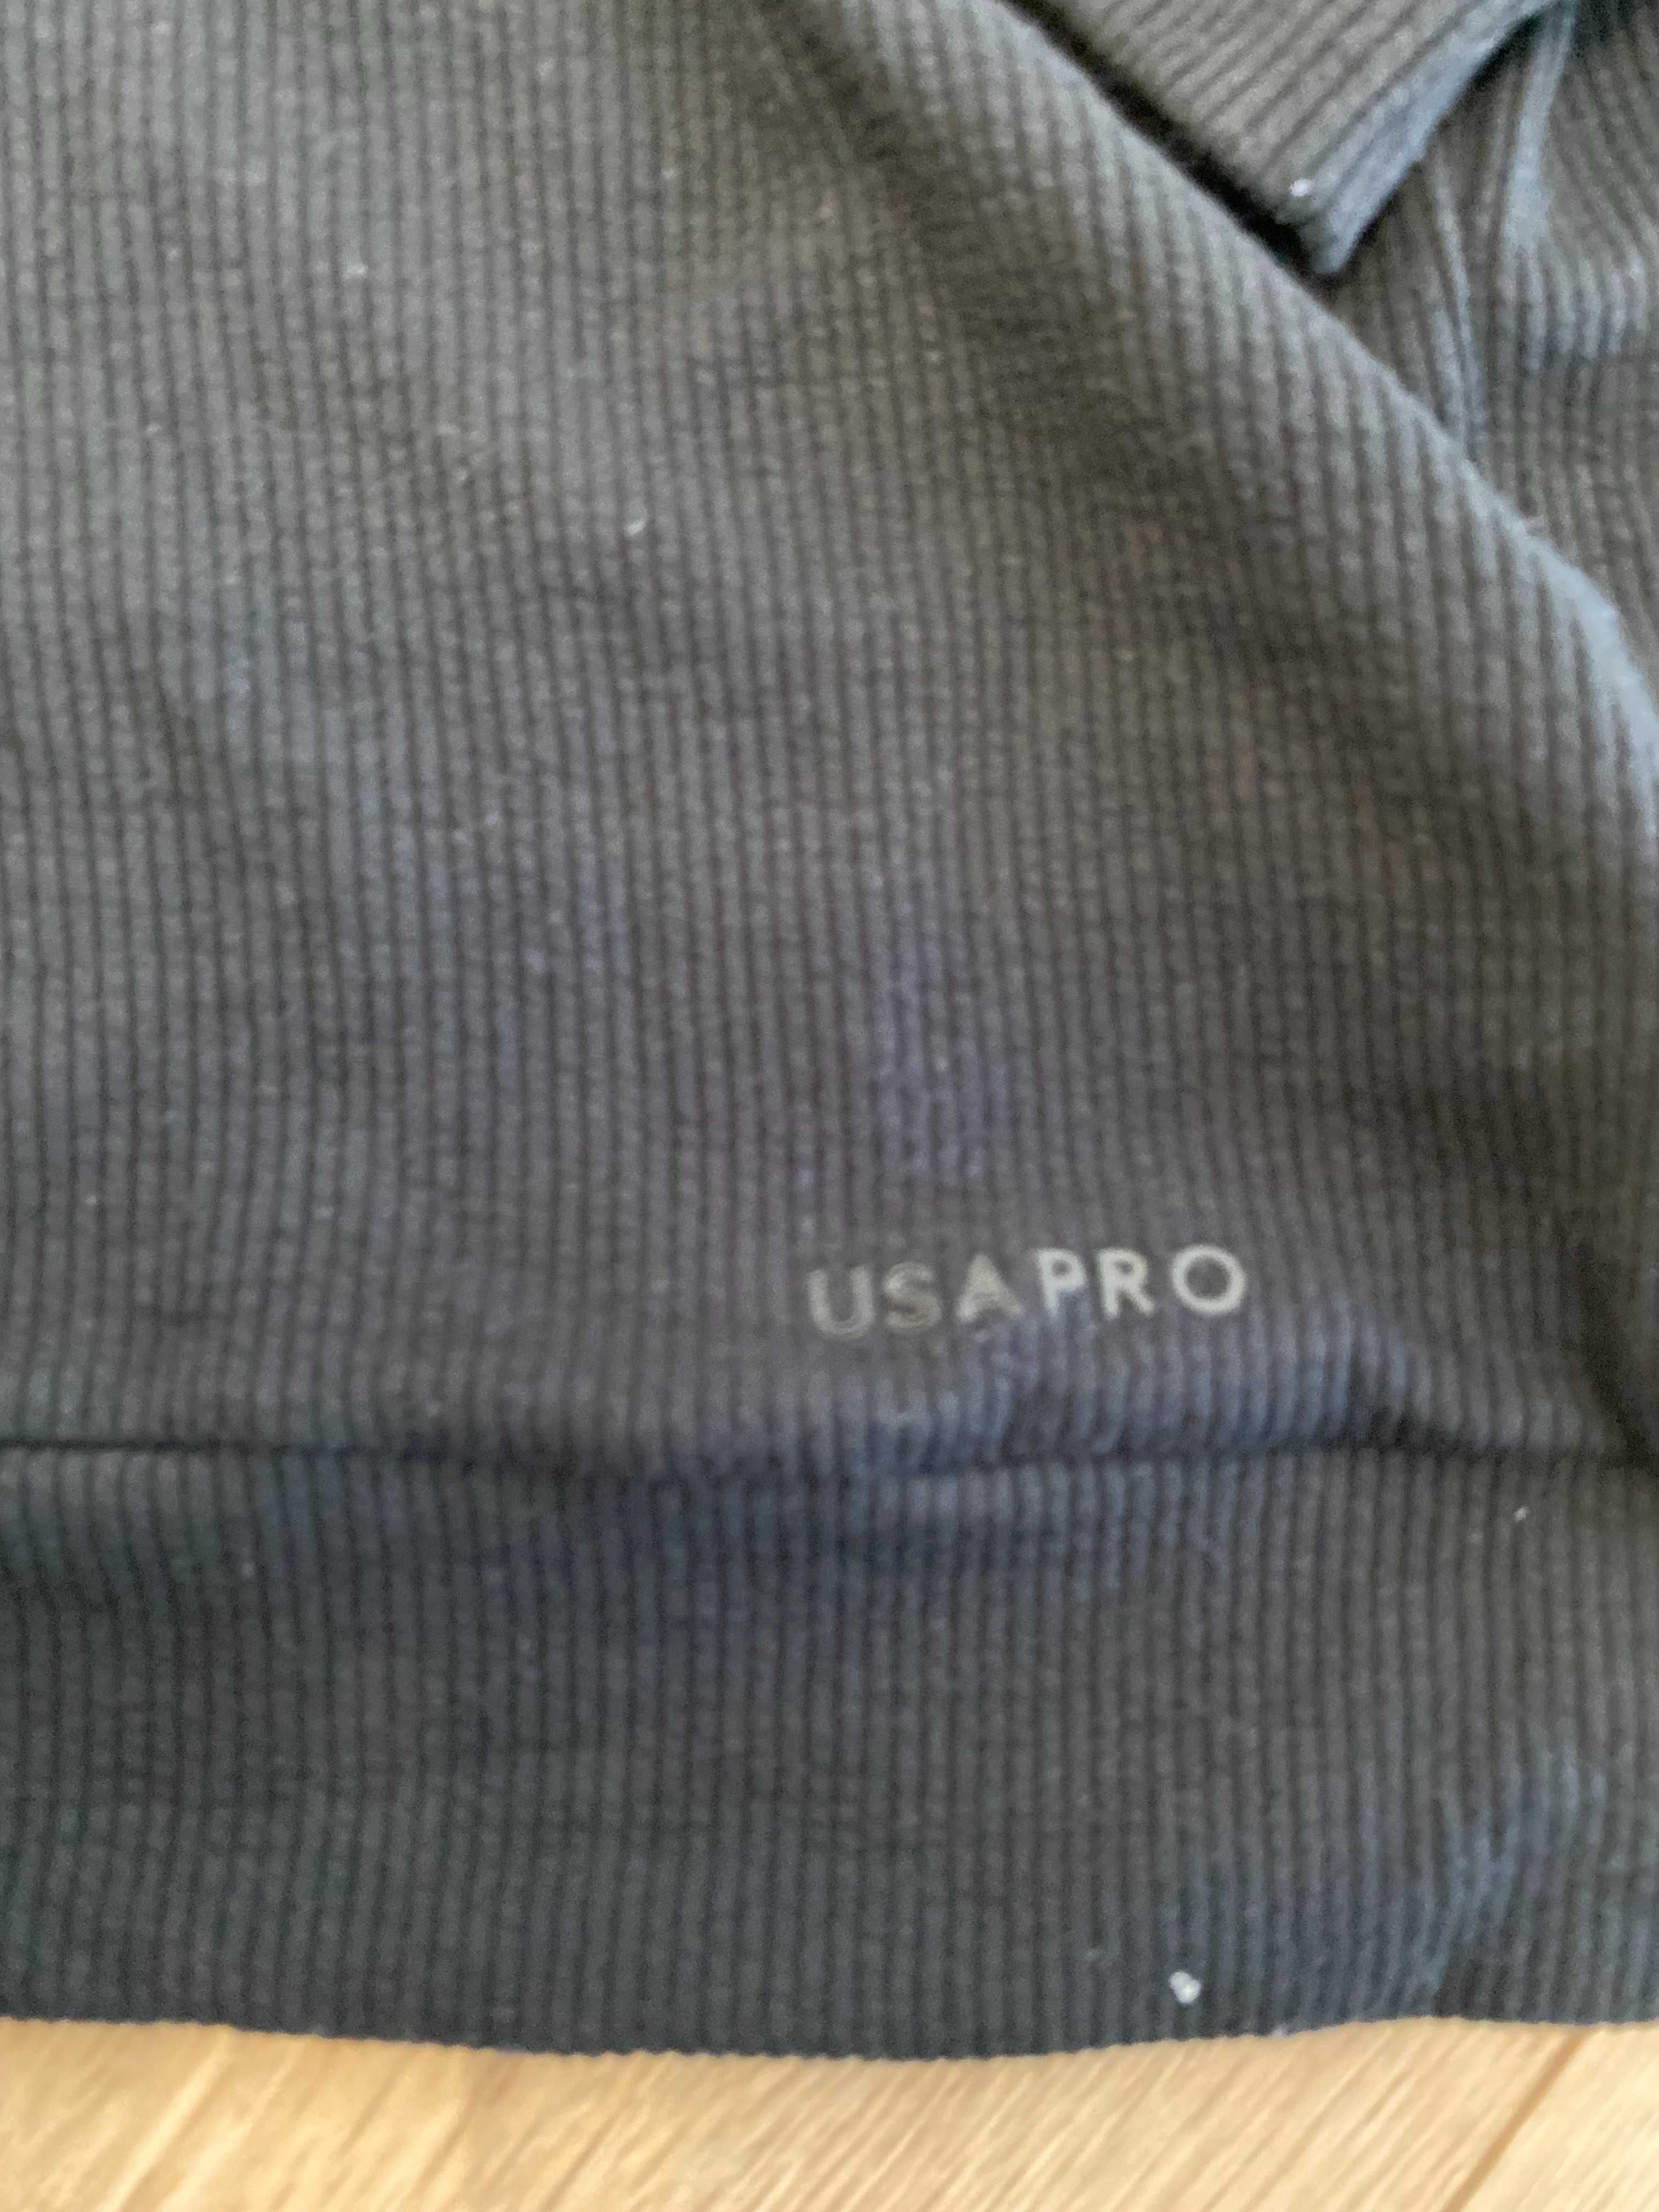 USA PRO, bluza z kapturem, stan bardzo dobry, rozmiar S